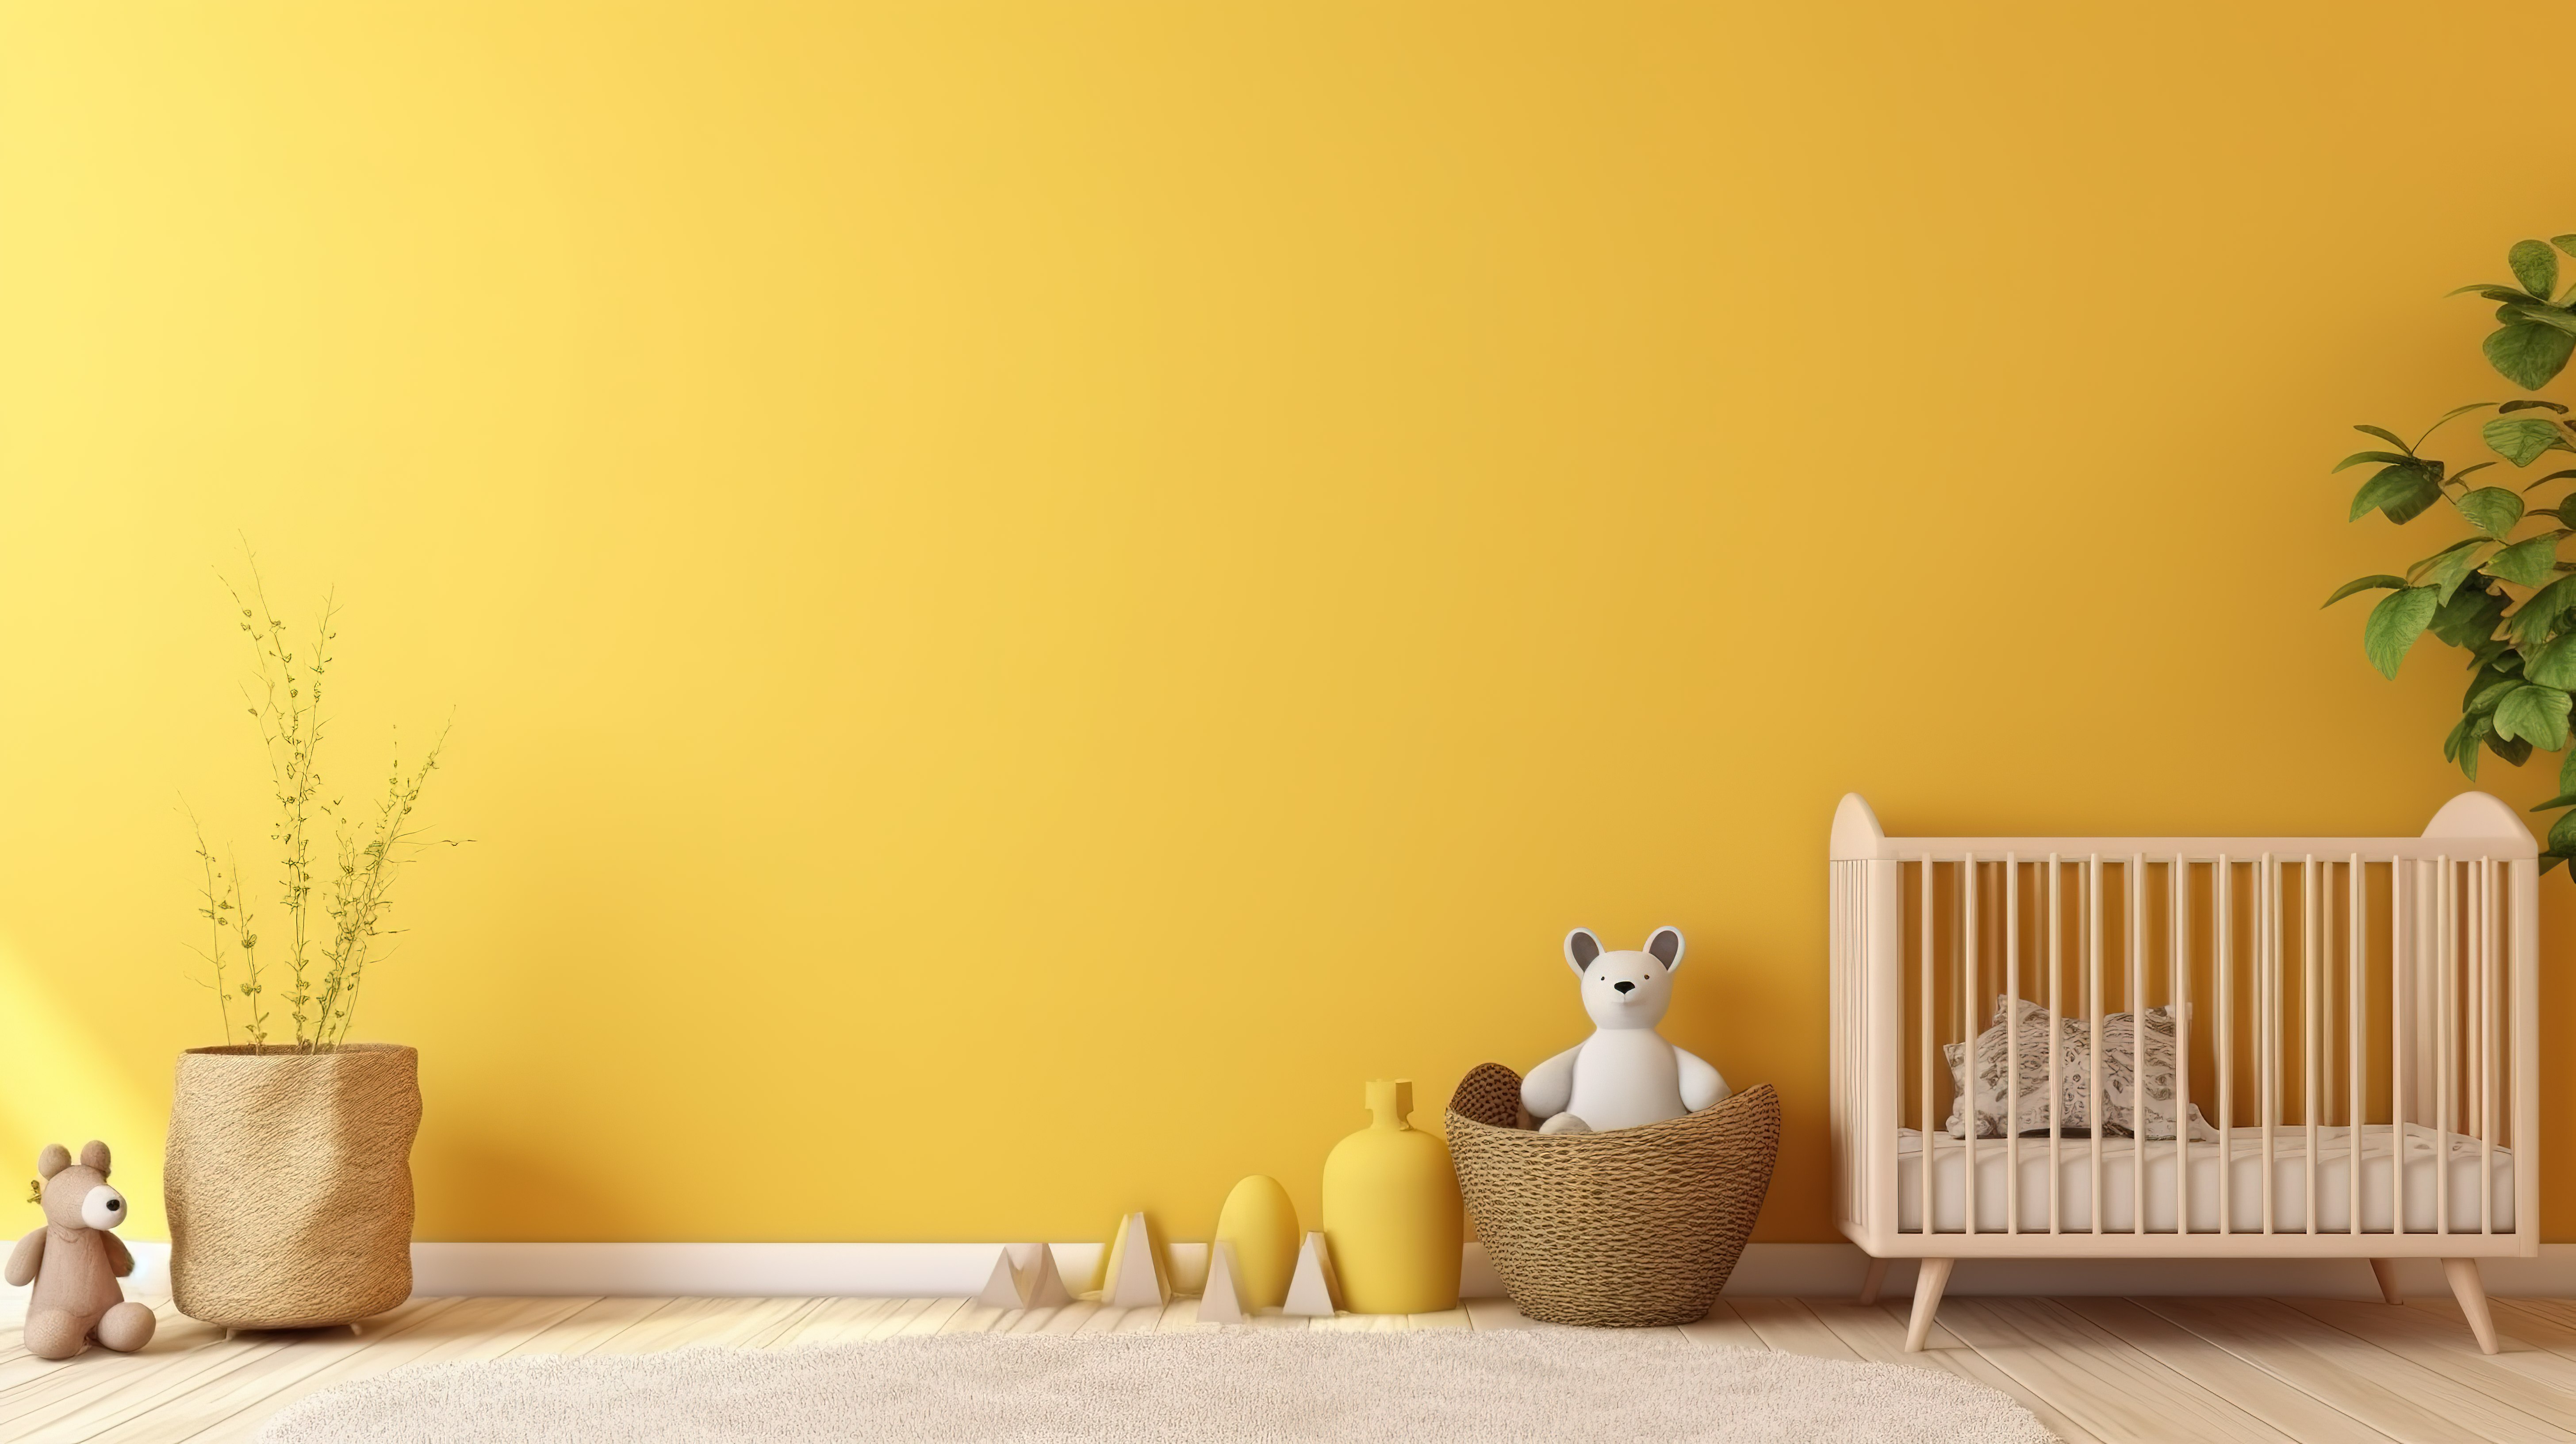 婴儿房间的 3D 渲染内部展示了婴儿床，旁边是简约的黄色墙壁图片